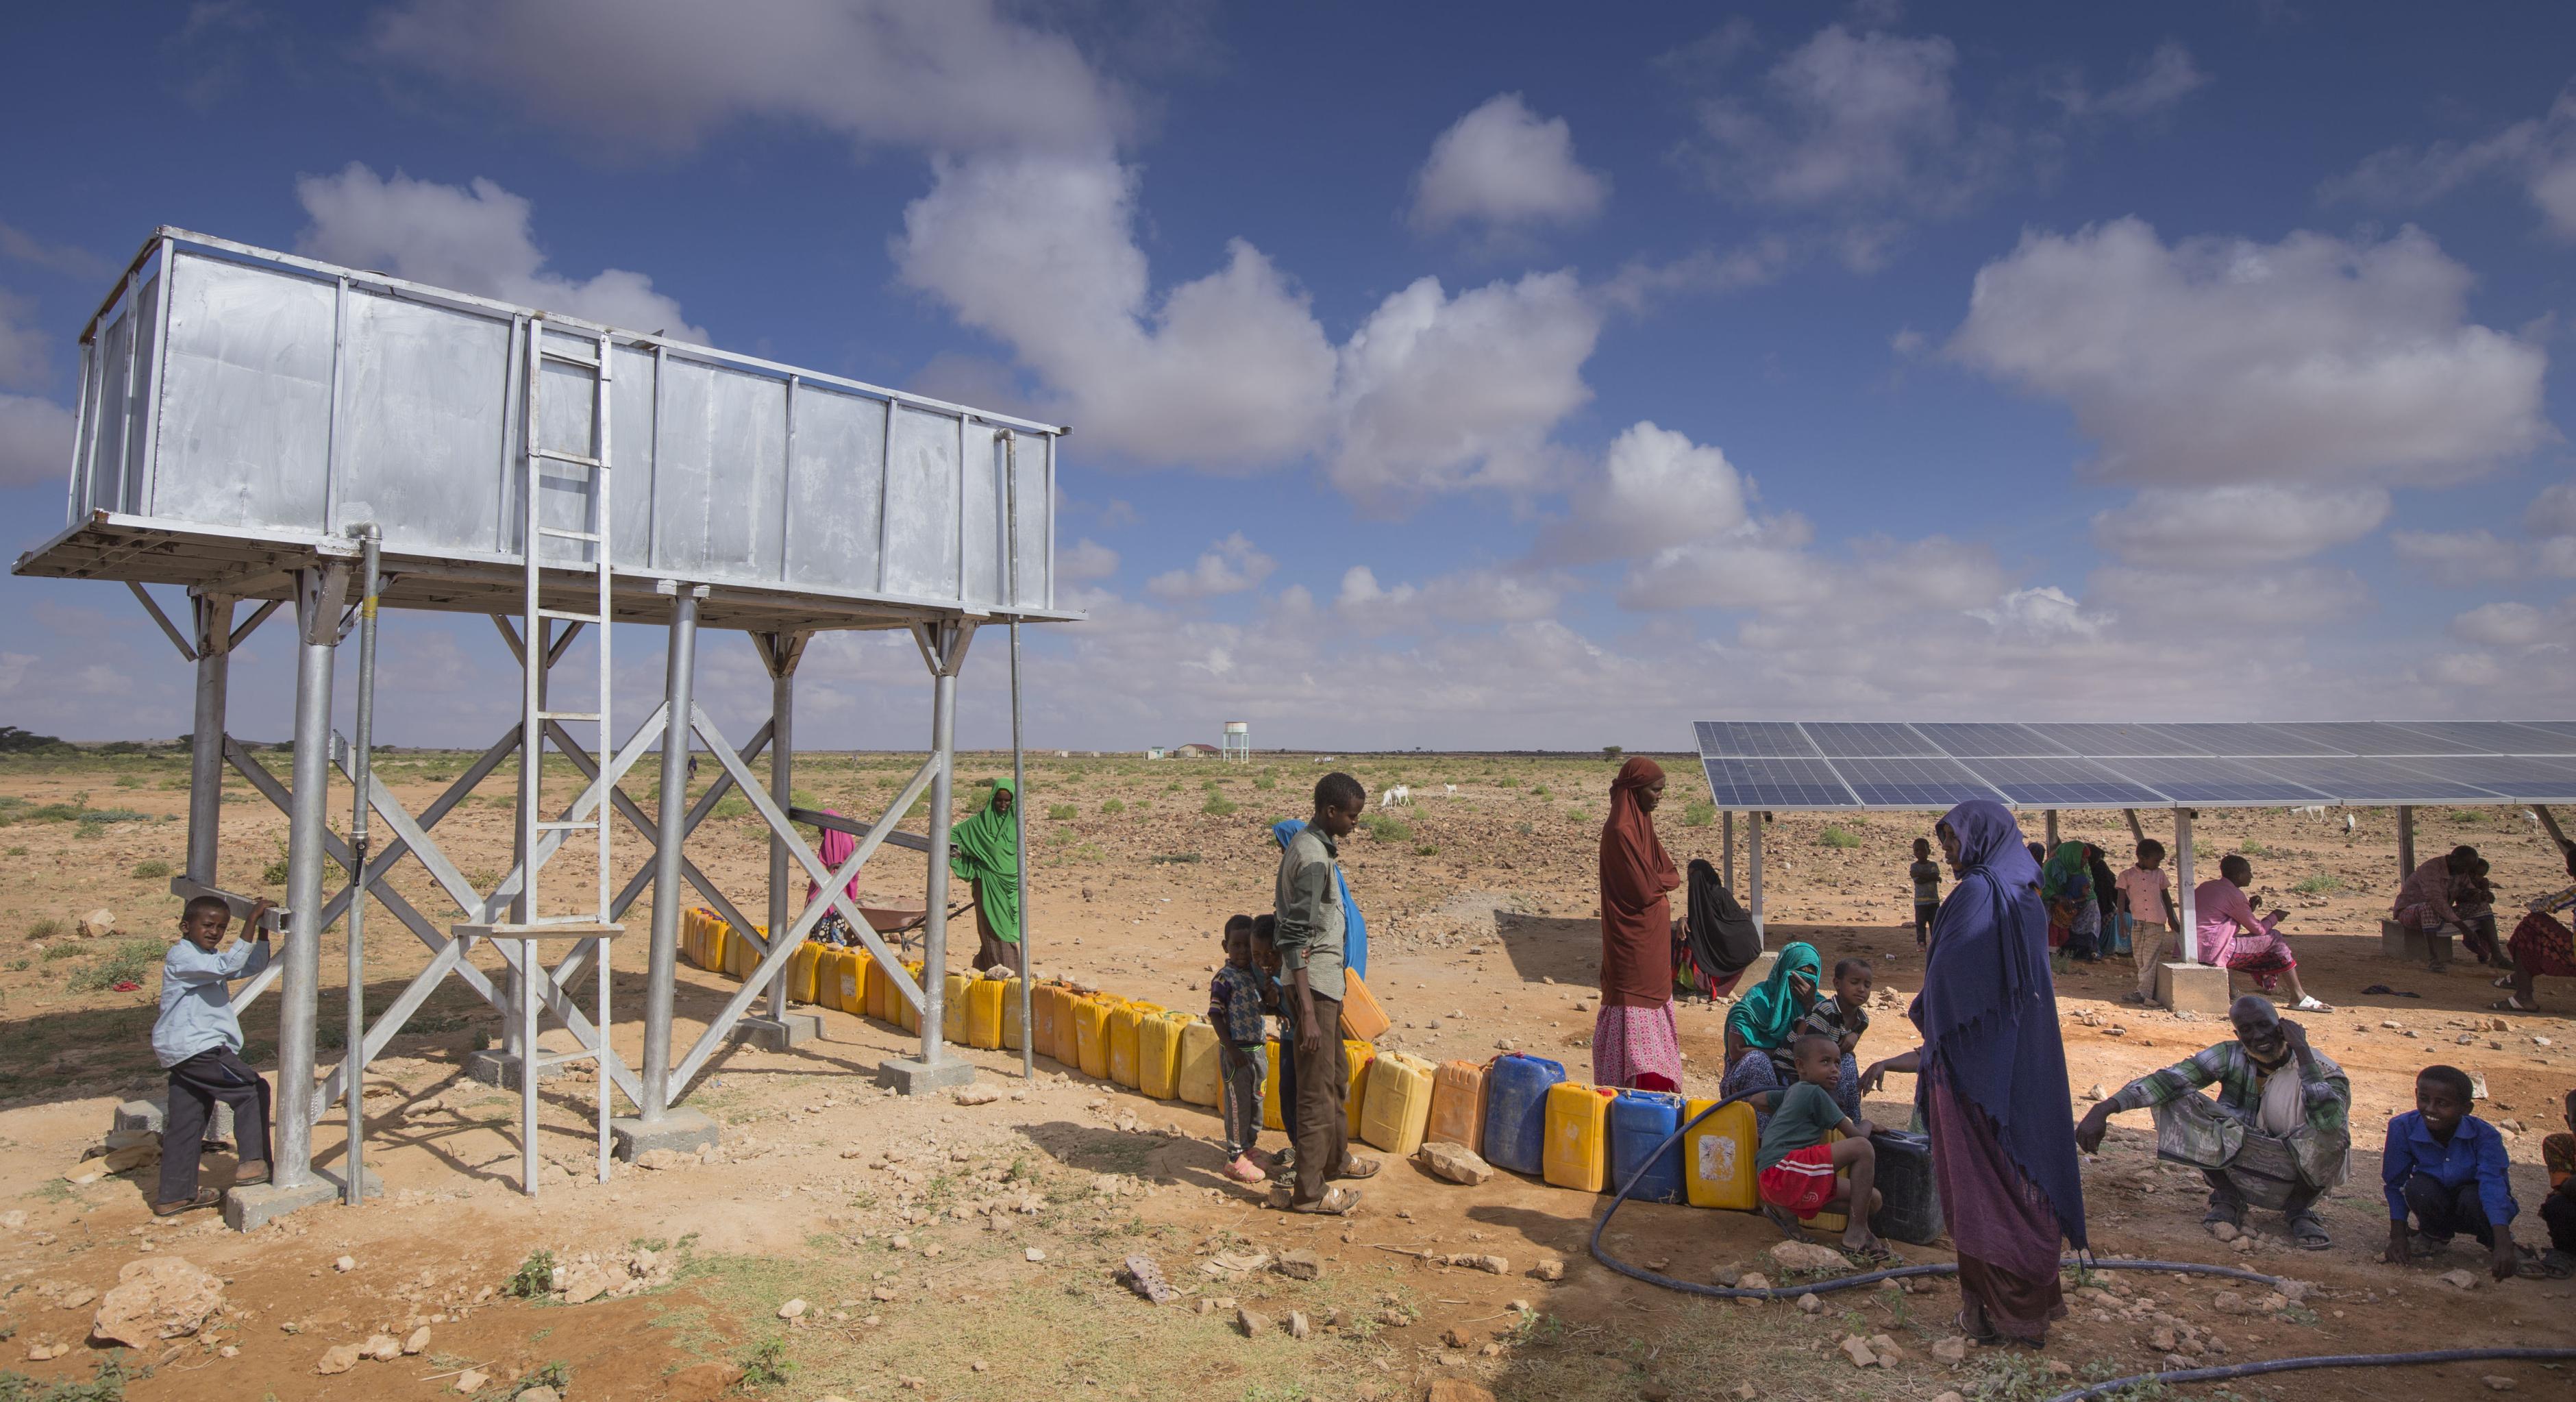 In der von Oxfam gebauten Entsalzungsanlage in Ceel Midgaan, Somaliland, wird sauberes Wasser erzeugt.Das Bild zeigt einen Wassertank, vor dem viele Wasserkanister stehen. Im Hintergrund steht eine Solaranlage, die die Entsalzungsanlage mit Strom versorgt. Unter den Solarpanels sitzen einige Menschen im Schatten. Weitere Menschen stehen und Hocken in der Sonne und warten darauf, ihre Kanister befüllen zu können.